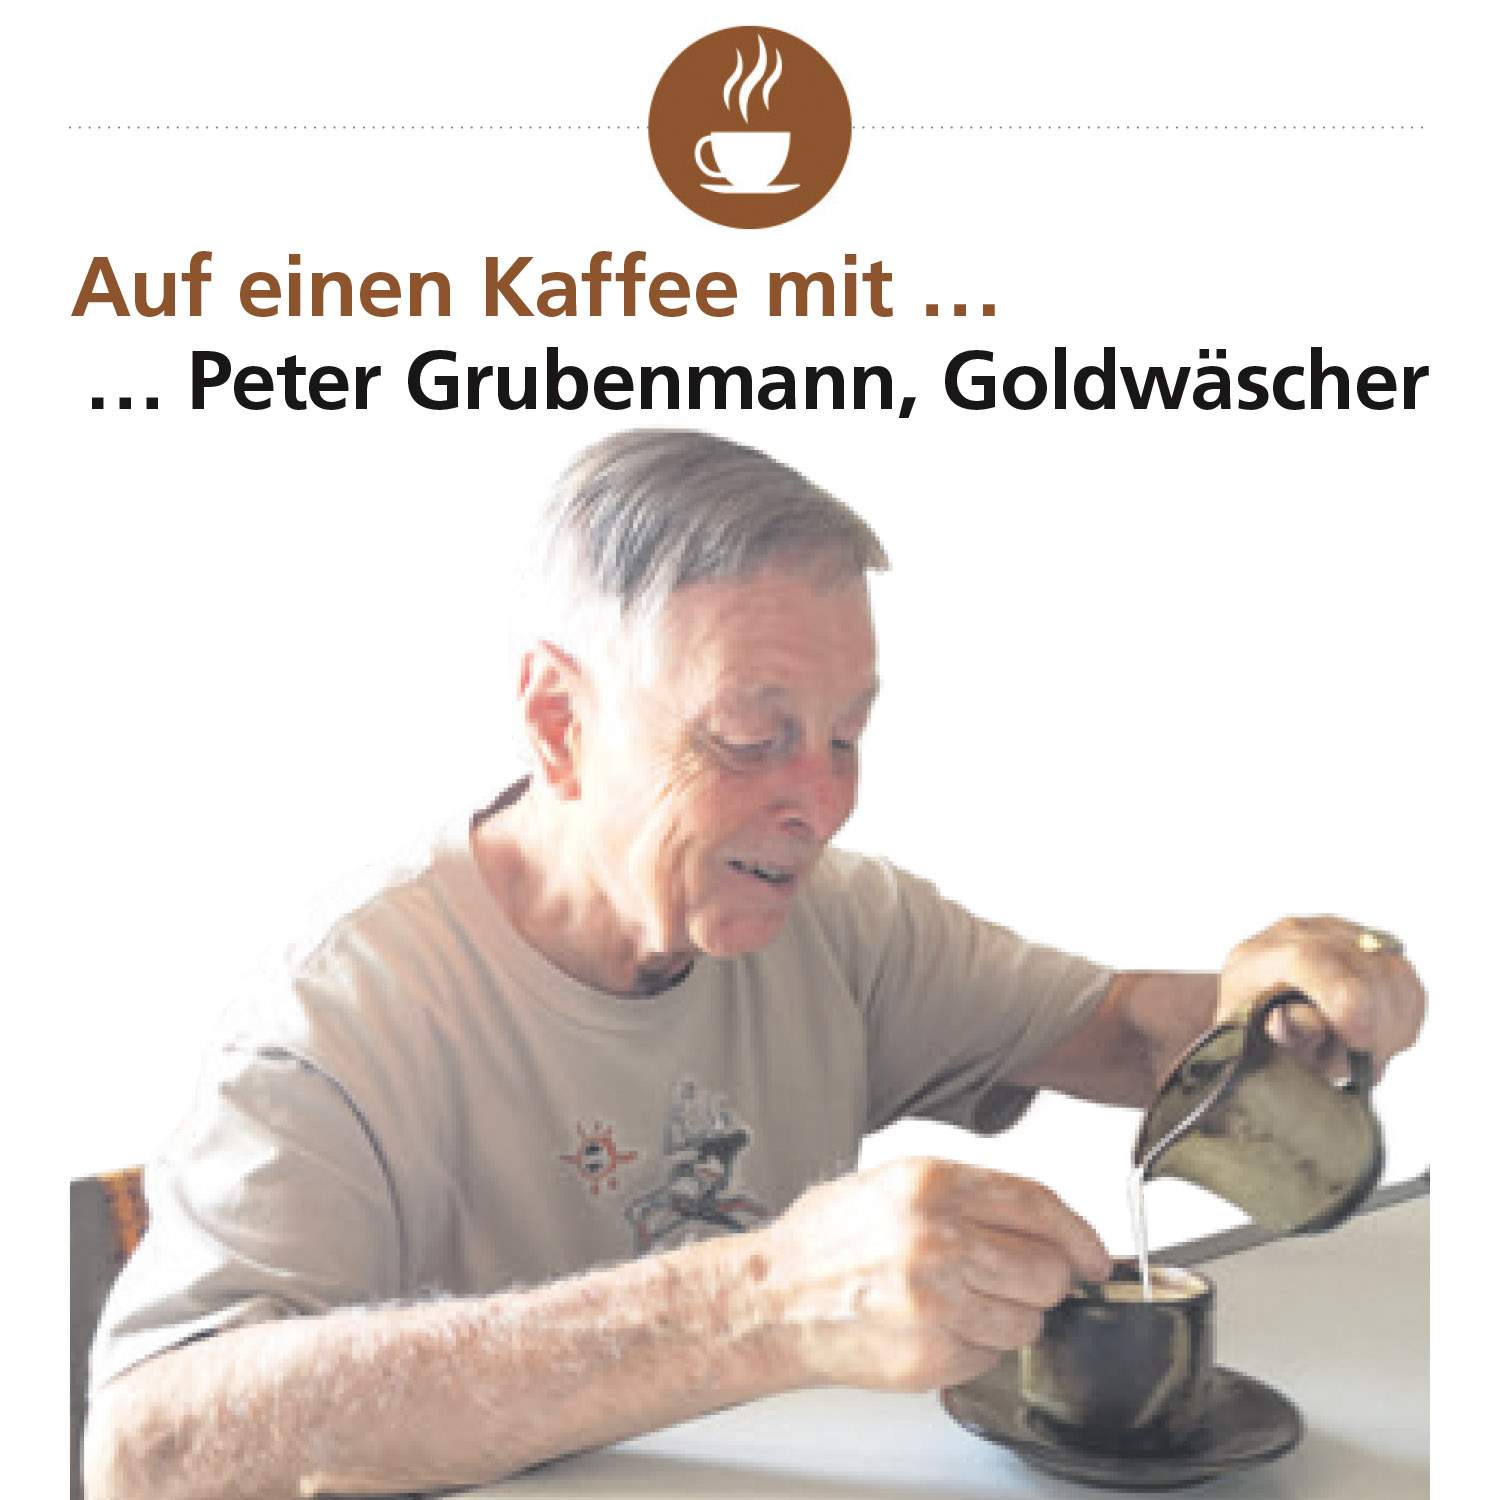 Bericht in der Bantiger Post: Auf einen Kaffee mit Peter Grubenmann, Goldwäscher